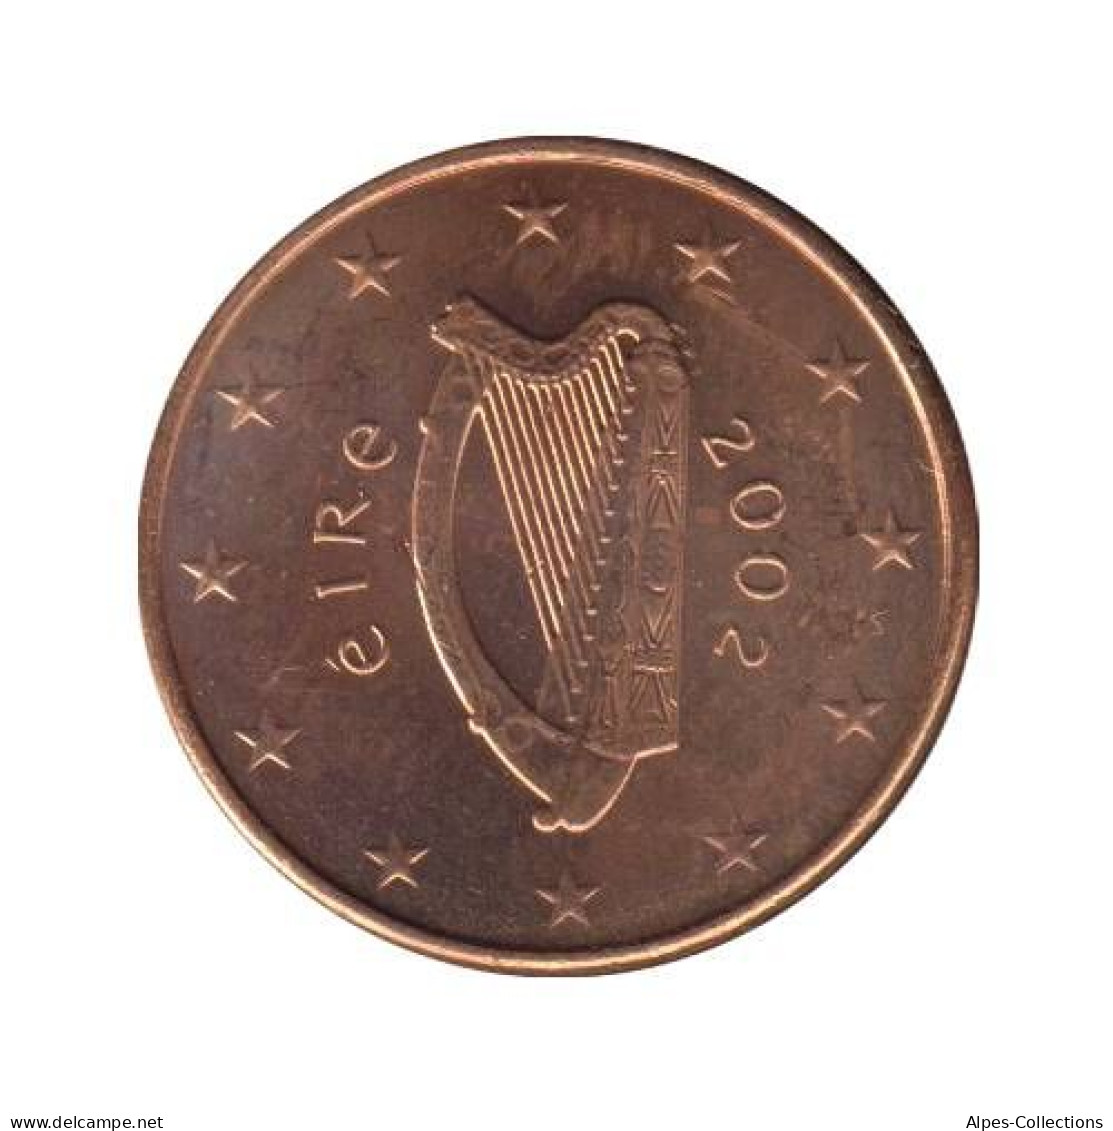 IR00102.1 - IRLANDE - 1 Cent - 2002 - Irland